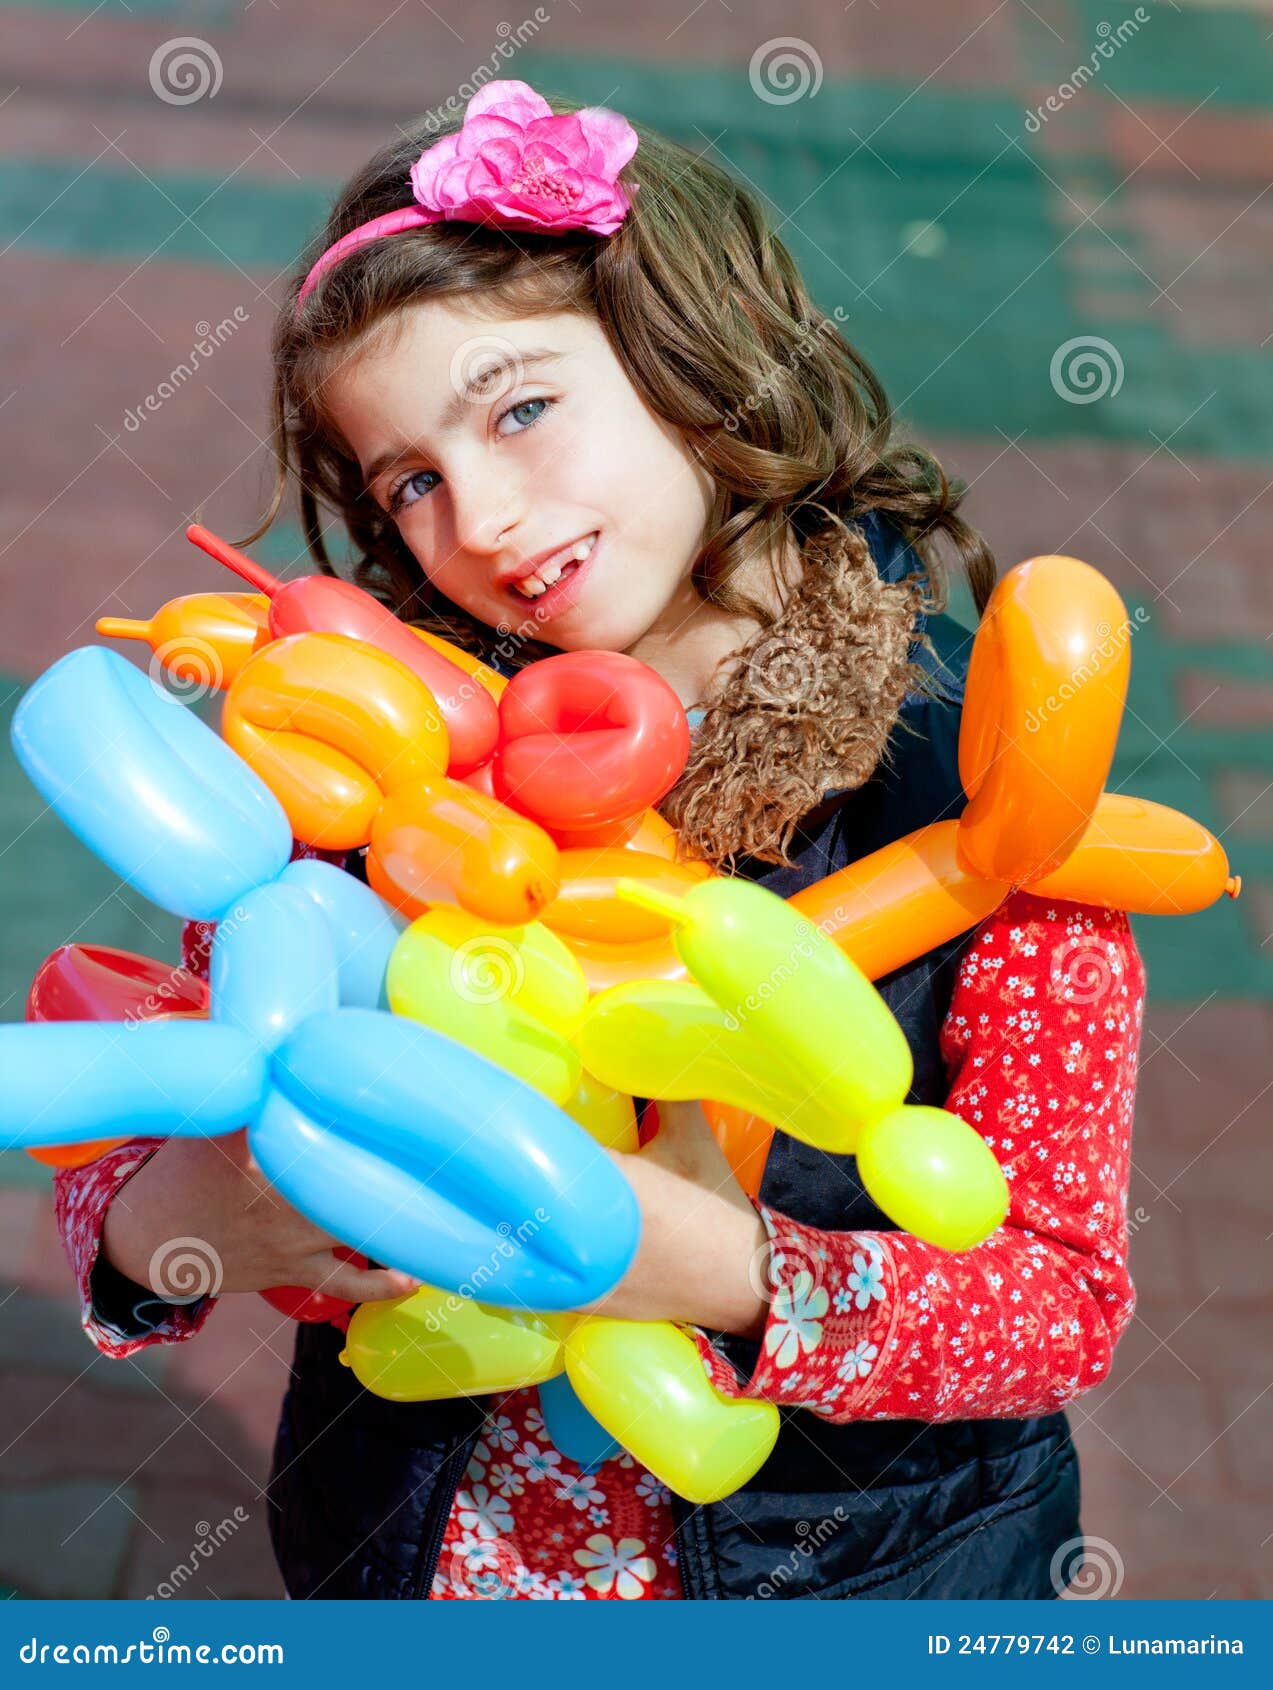 balloon twisting art children happy